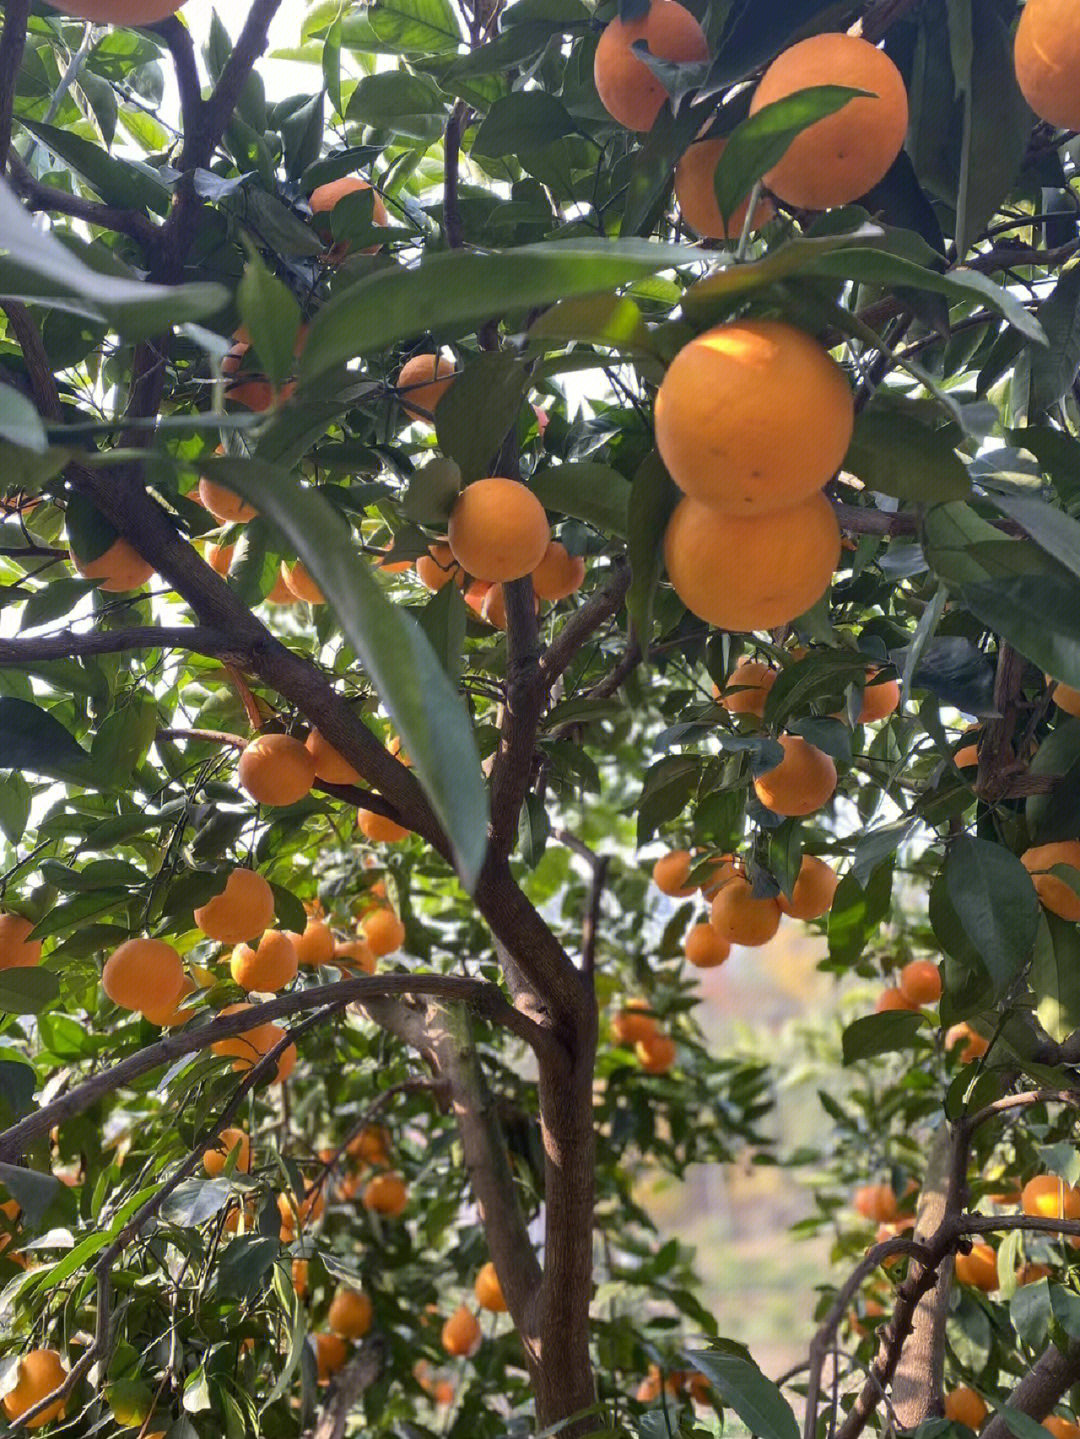 塔罗科血橙是脐橙中的一种,塔罗科血橙原产于意大利西西里岛,一部经典